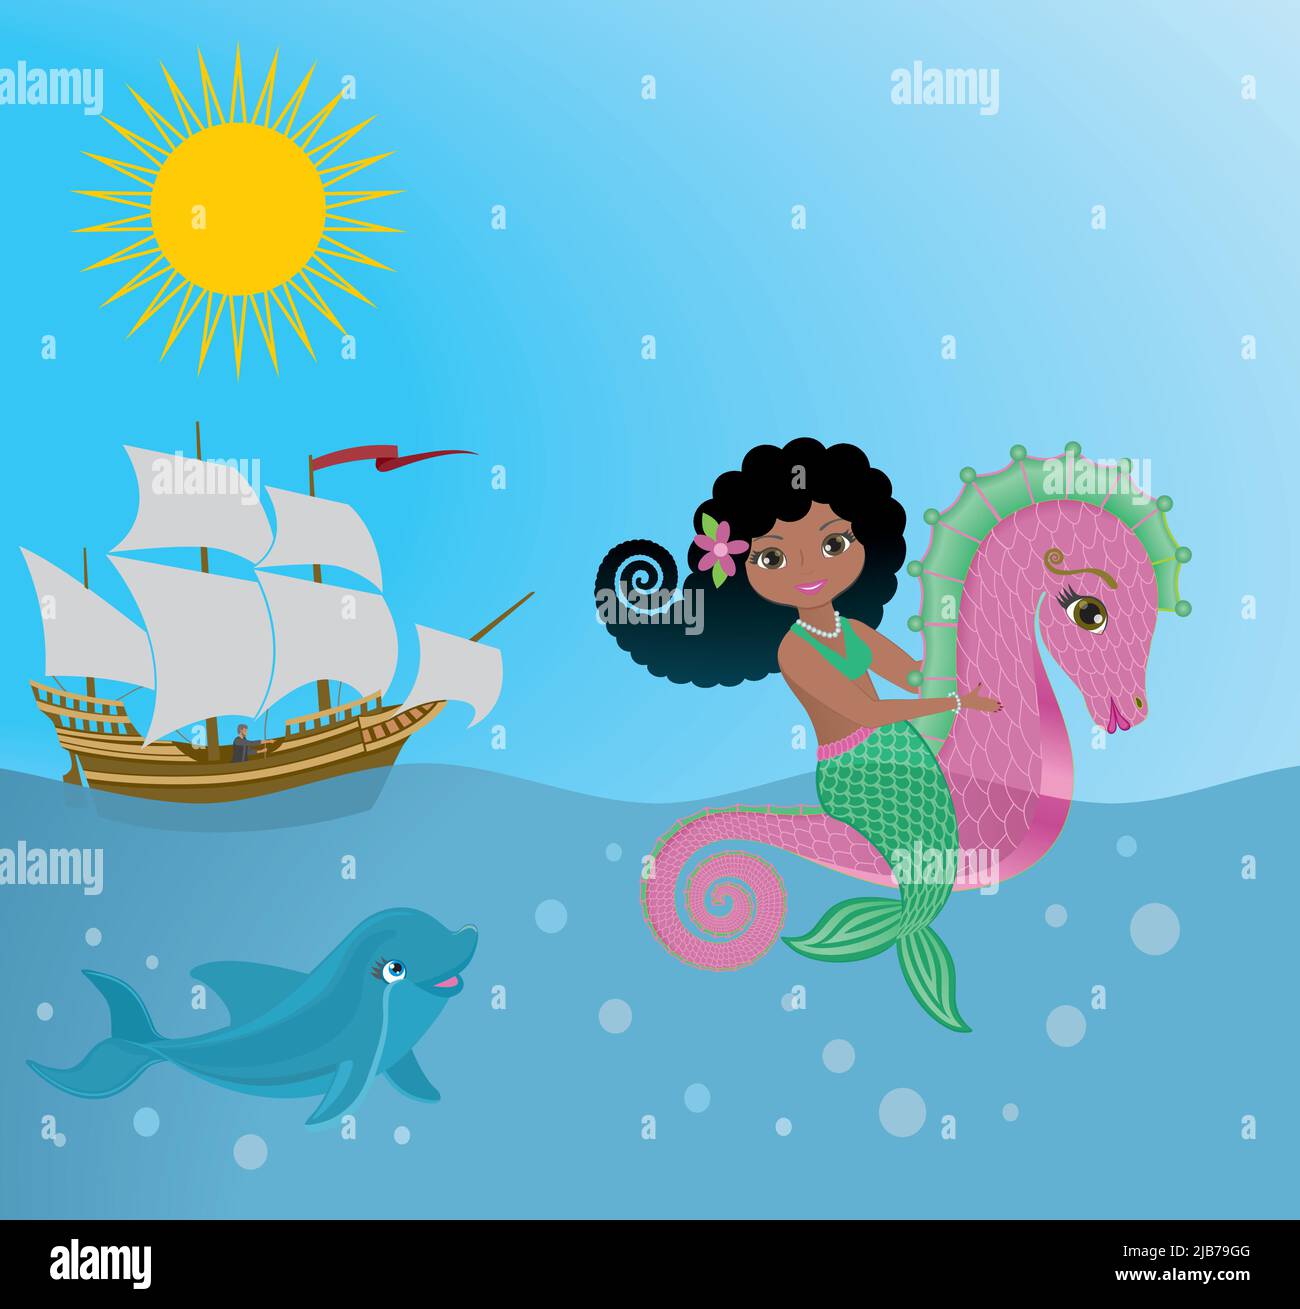 Meerjungfrau, die auf einem rosa Seepferd reitet. Dolpin sieht sie an, Segelschiff im Hintergrund. Vektorgrafik. Stock Vektor